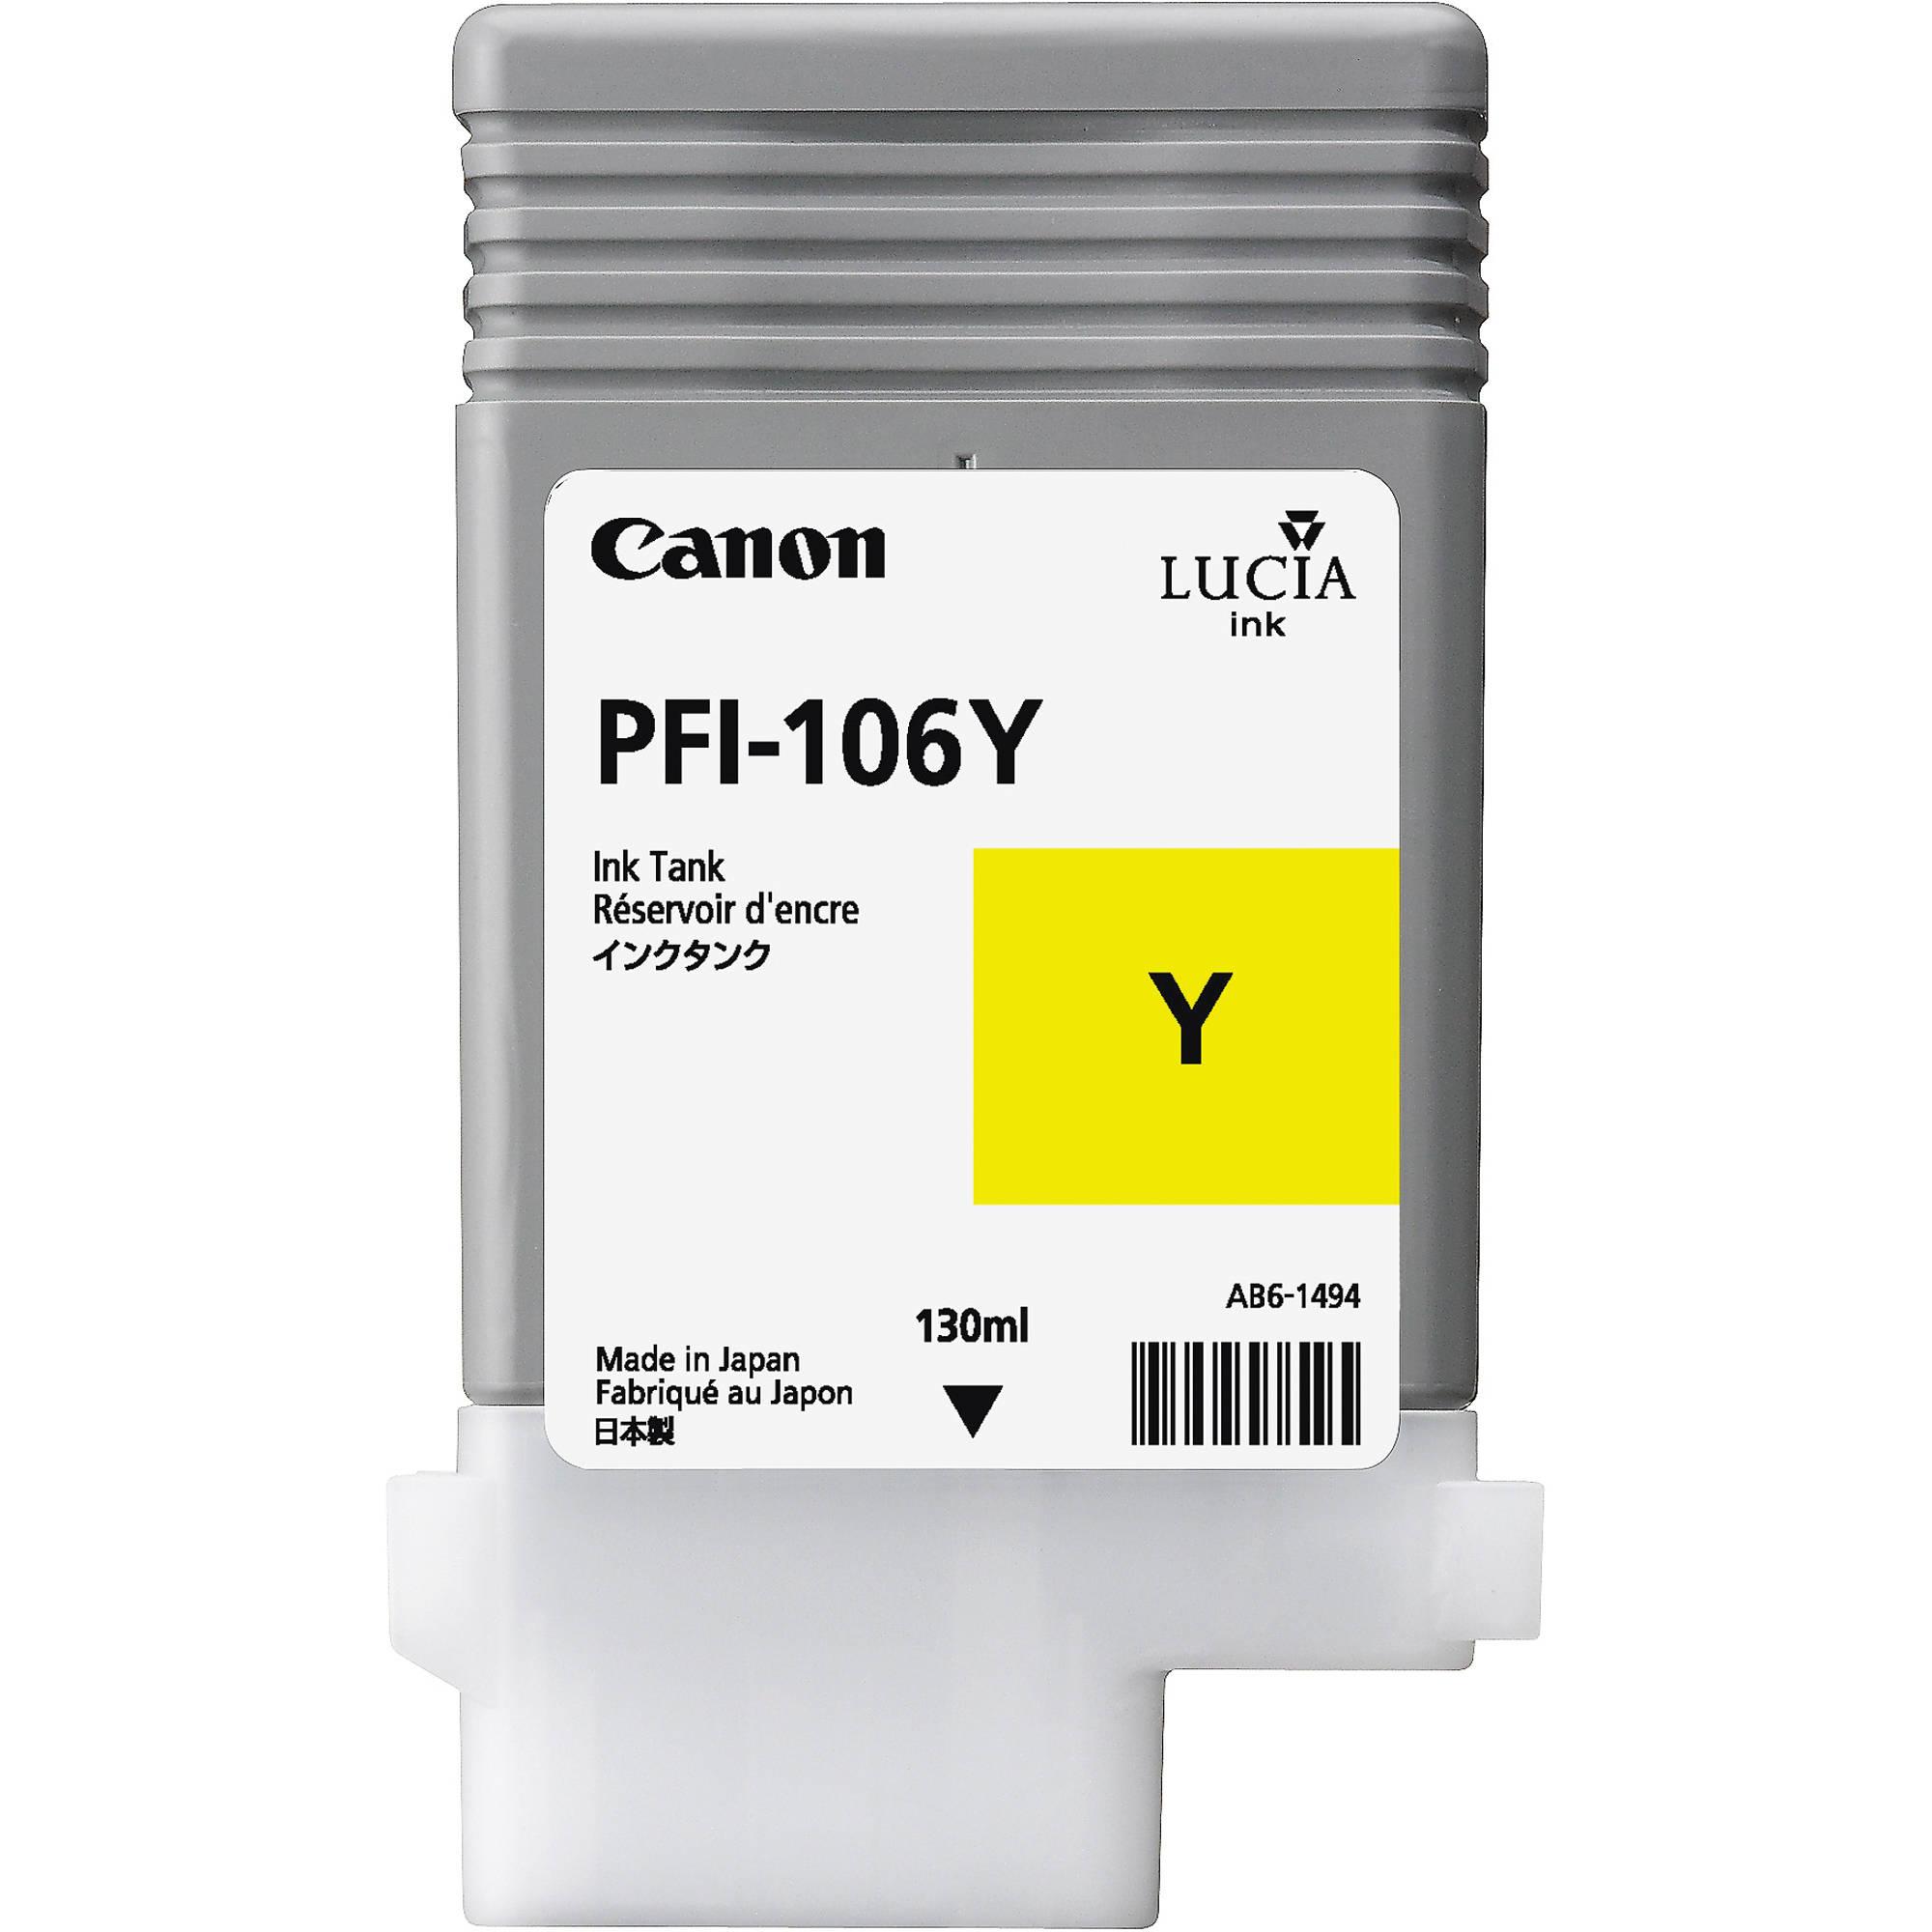 Чернильный картридж Canon PFI-106Y (желтый, 130мл), для iPF 6300/6300S/6350/6400/6400S/6400SE/6450